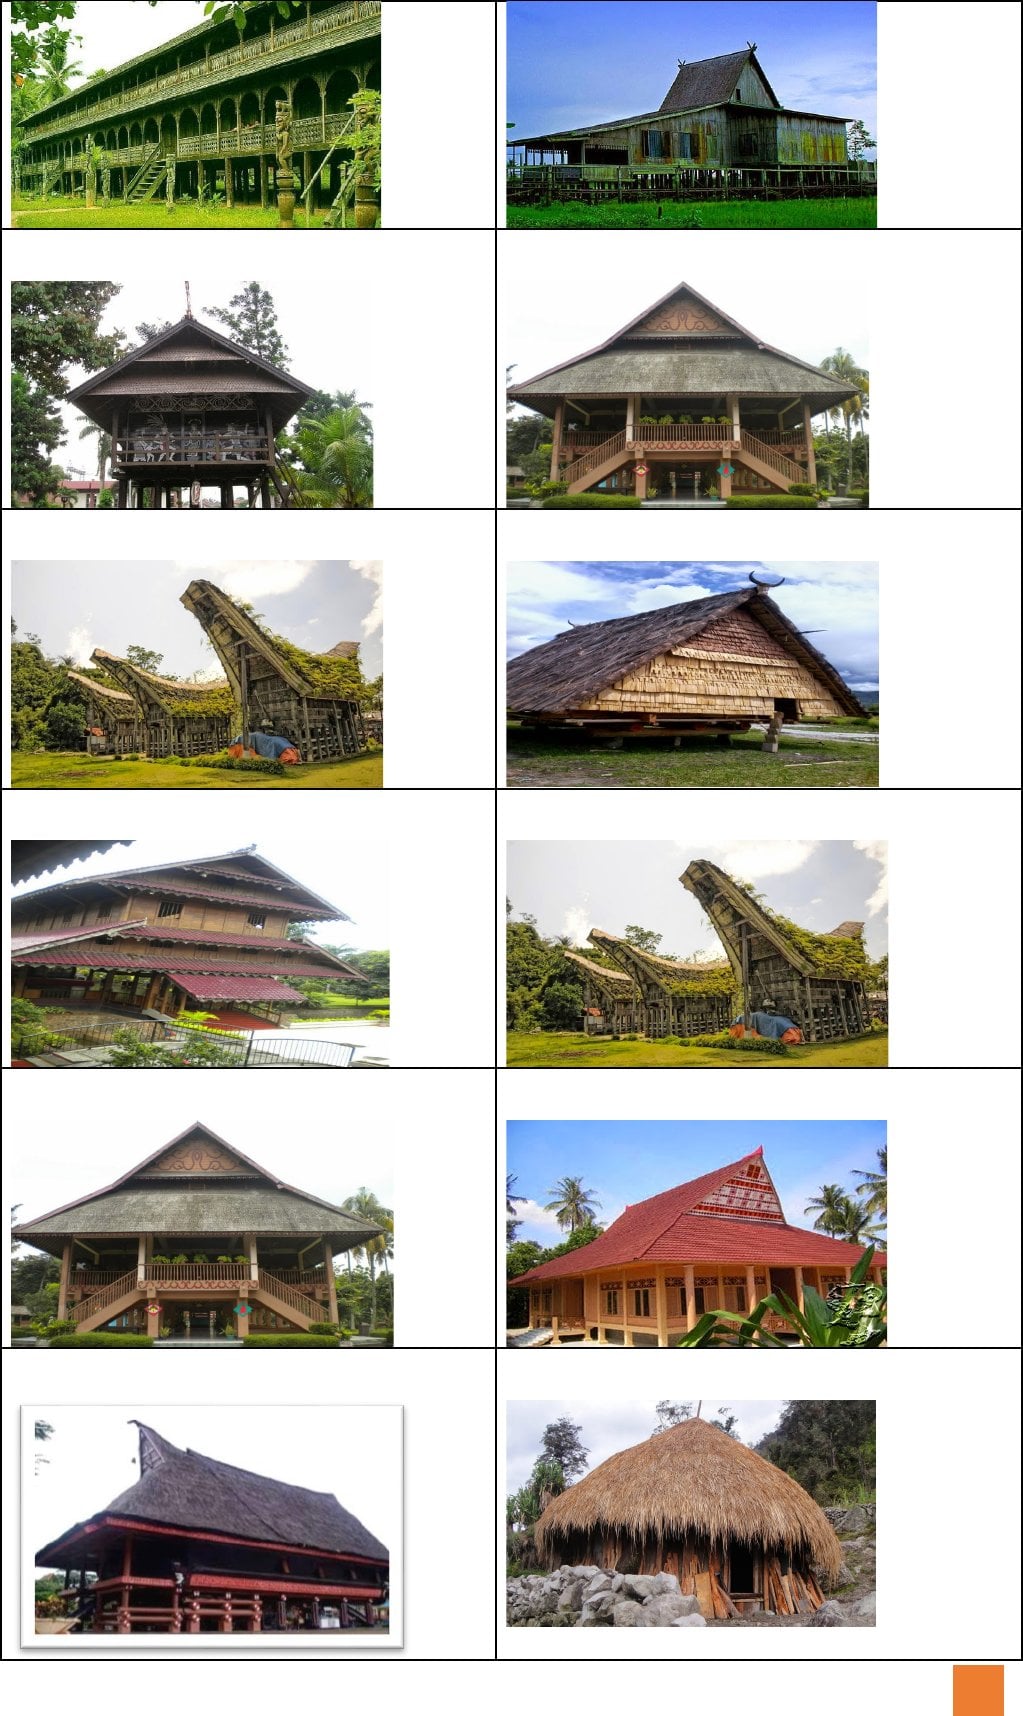 Terbaik 21 Gambar Rumah Adat 33 Provinsi Di Indonesia 54 Di Desain Interior Untuk Renovasi Rumah oleh 21 Gambar Rumah Adat 33 Provinsi Di Indonesia